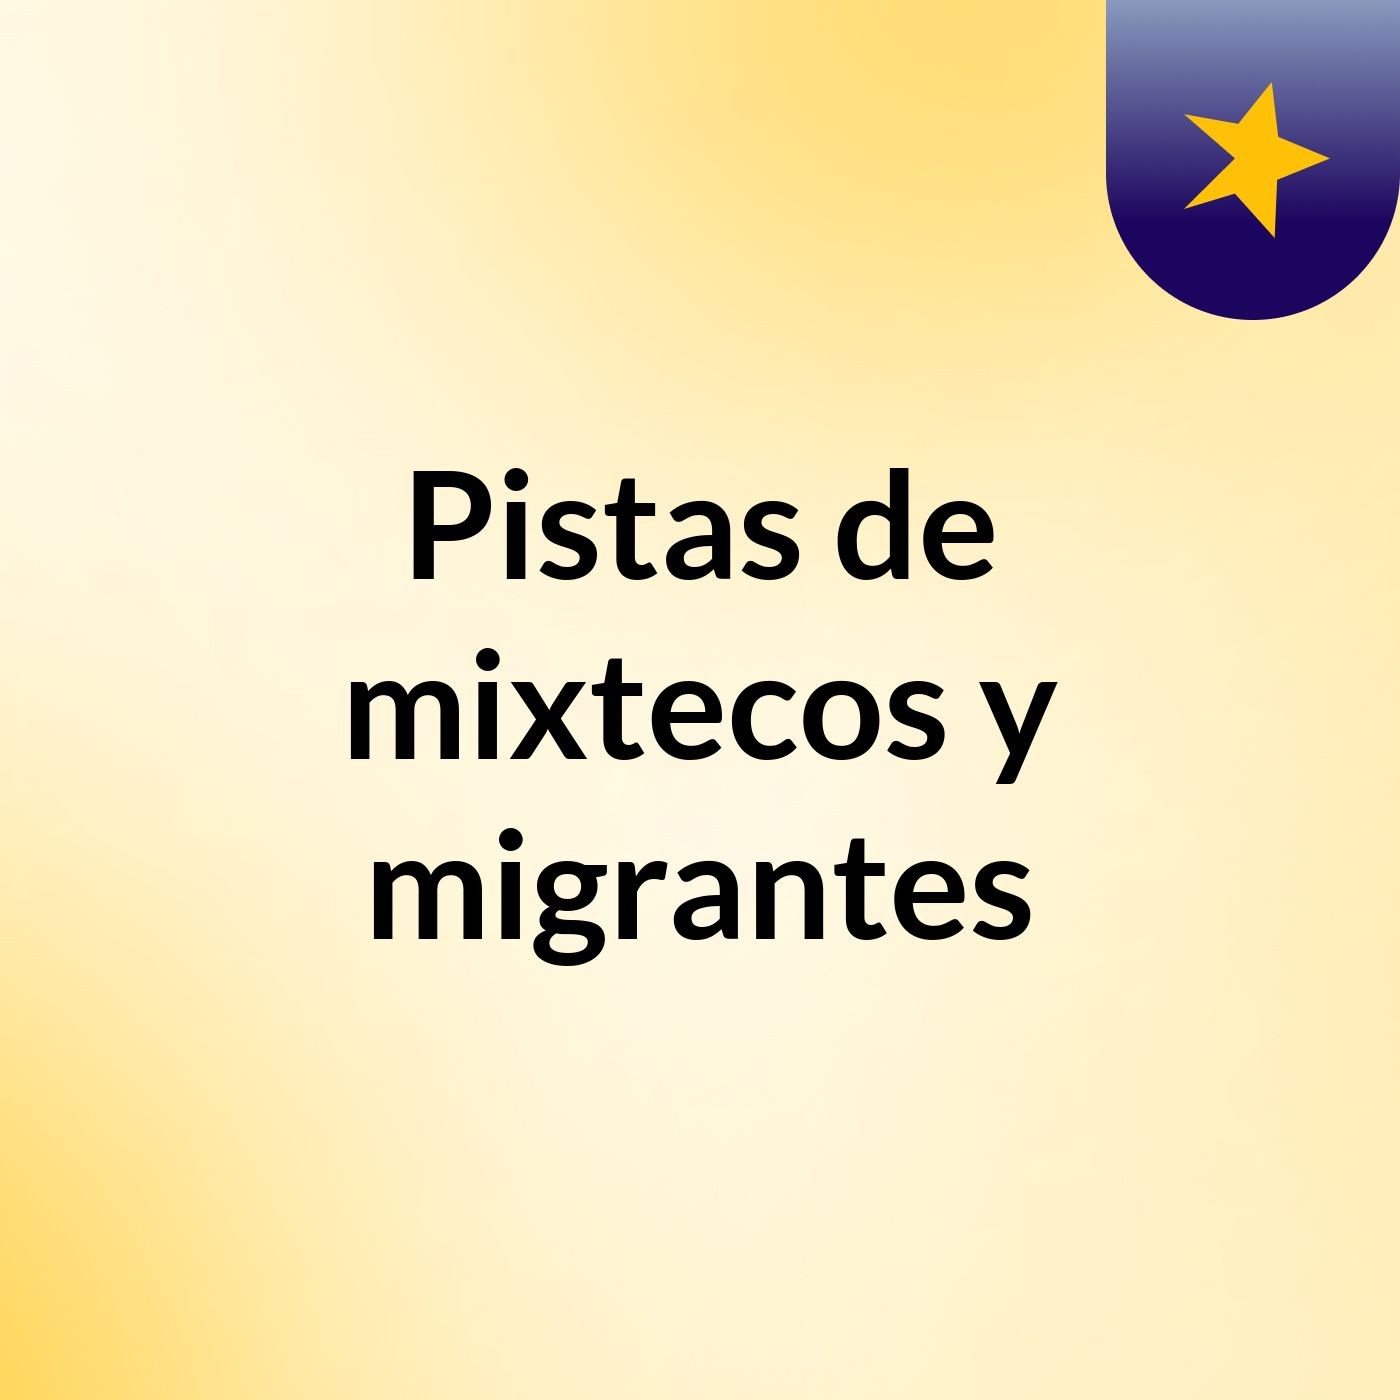 Pistas de mixtecos y migrantes